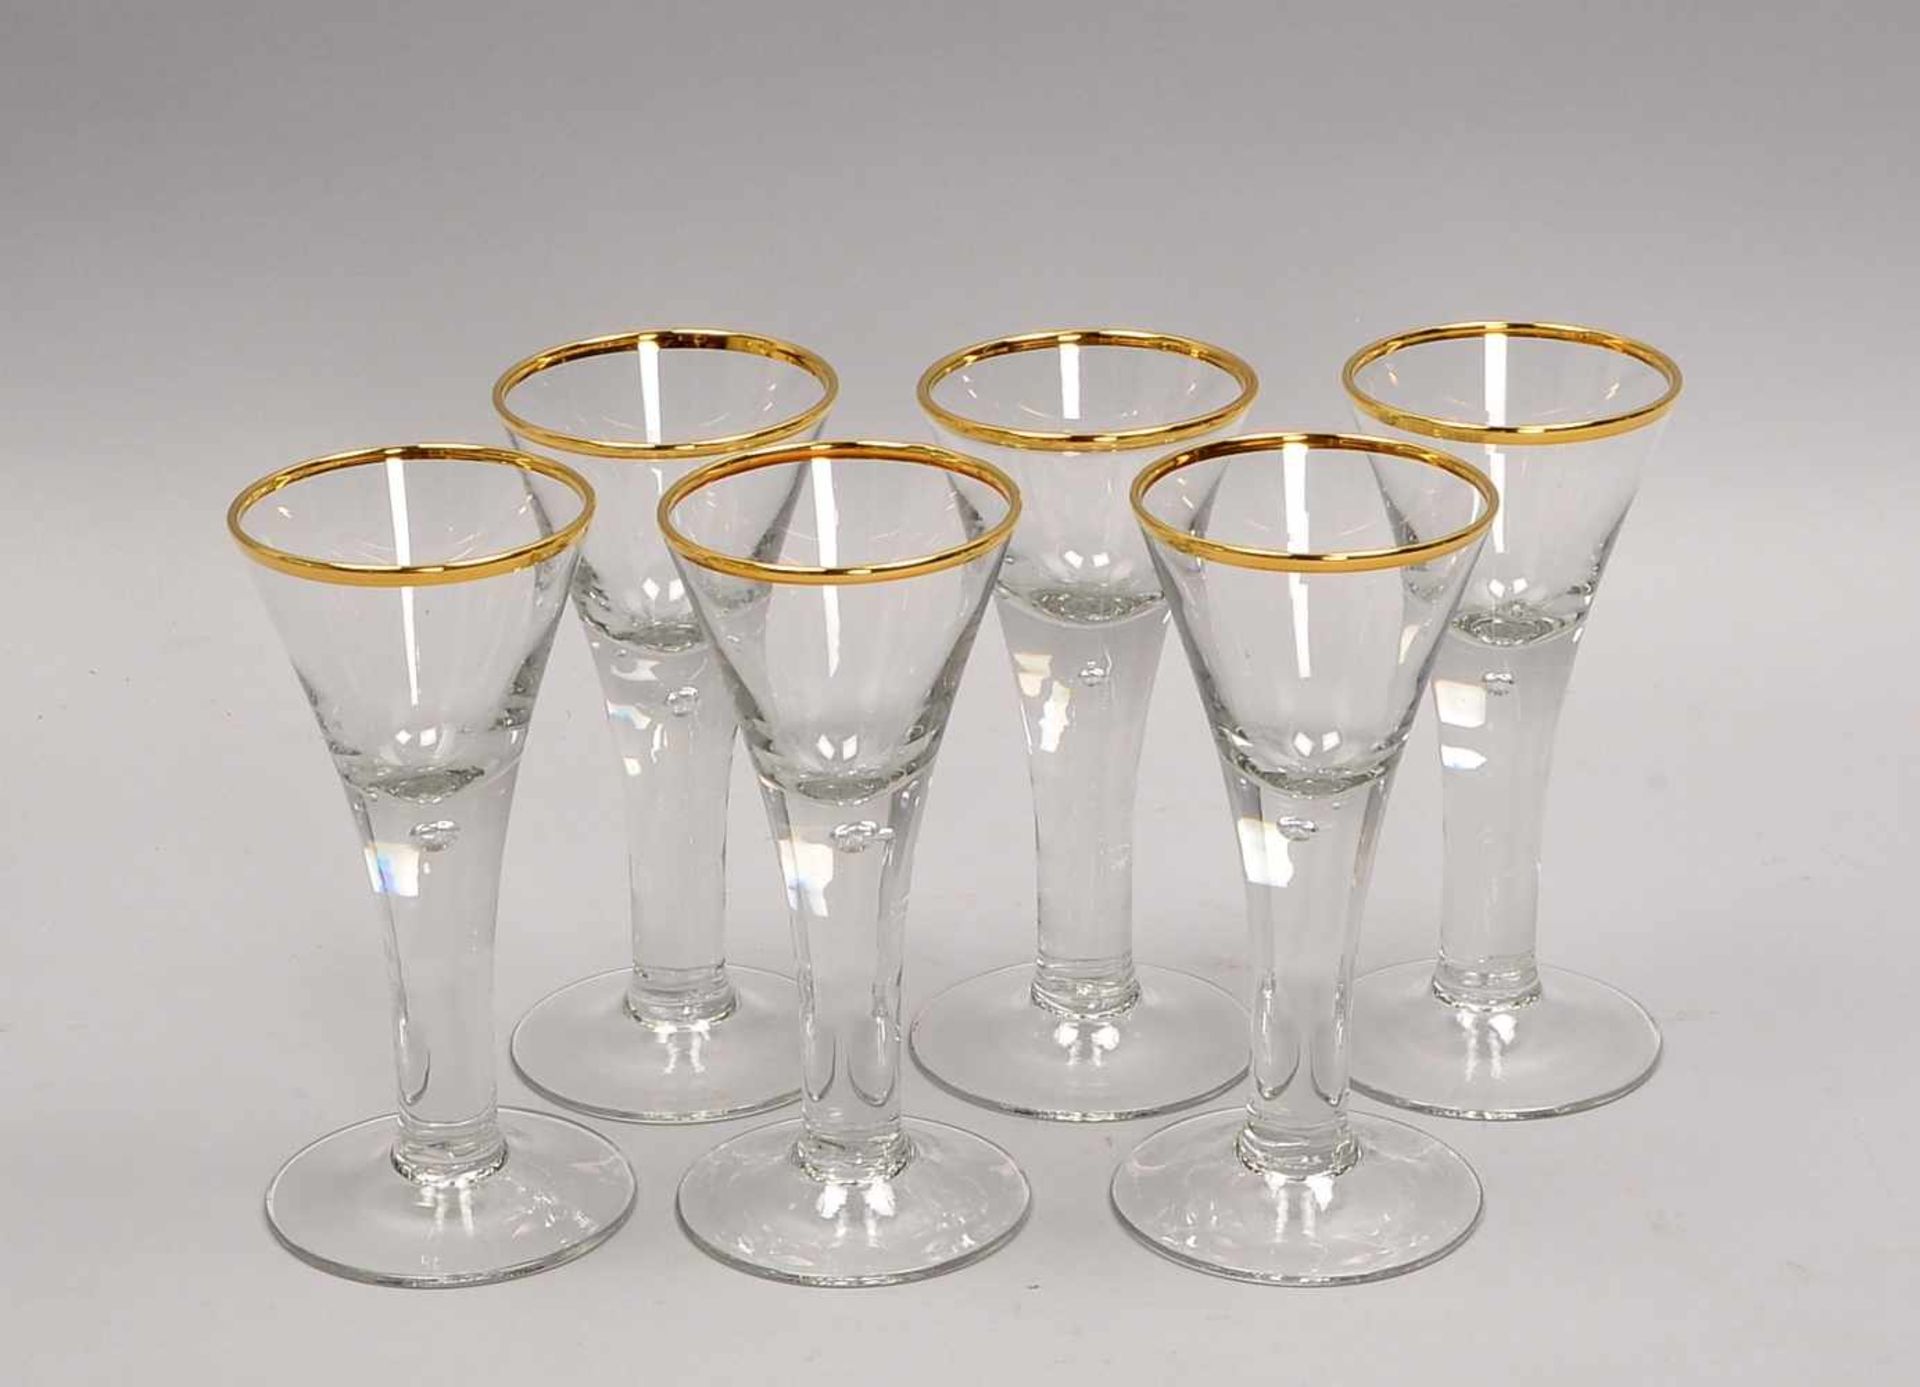 Satz Martini-Gläser, barocke Form/in Lauensteiner Manier, mit eingestochenen Luftblasen und - Bild 2 aus 2